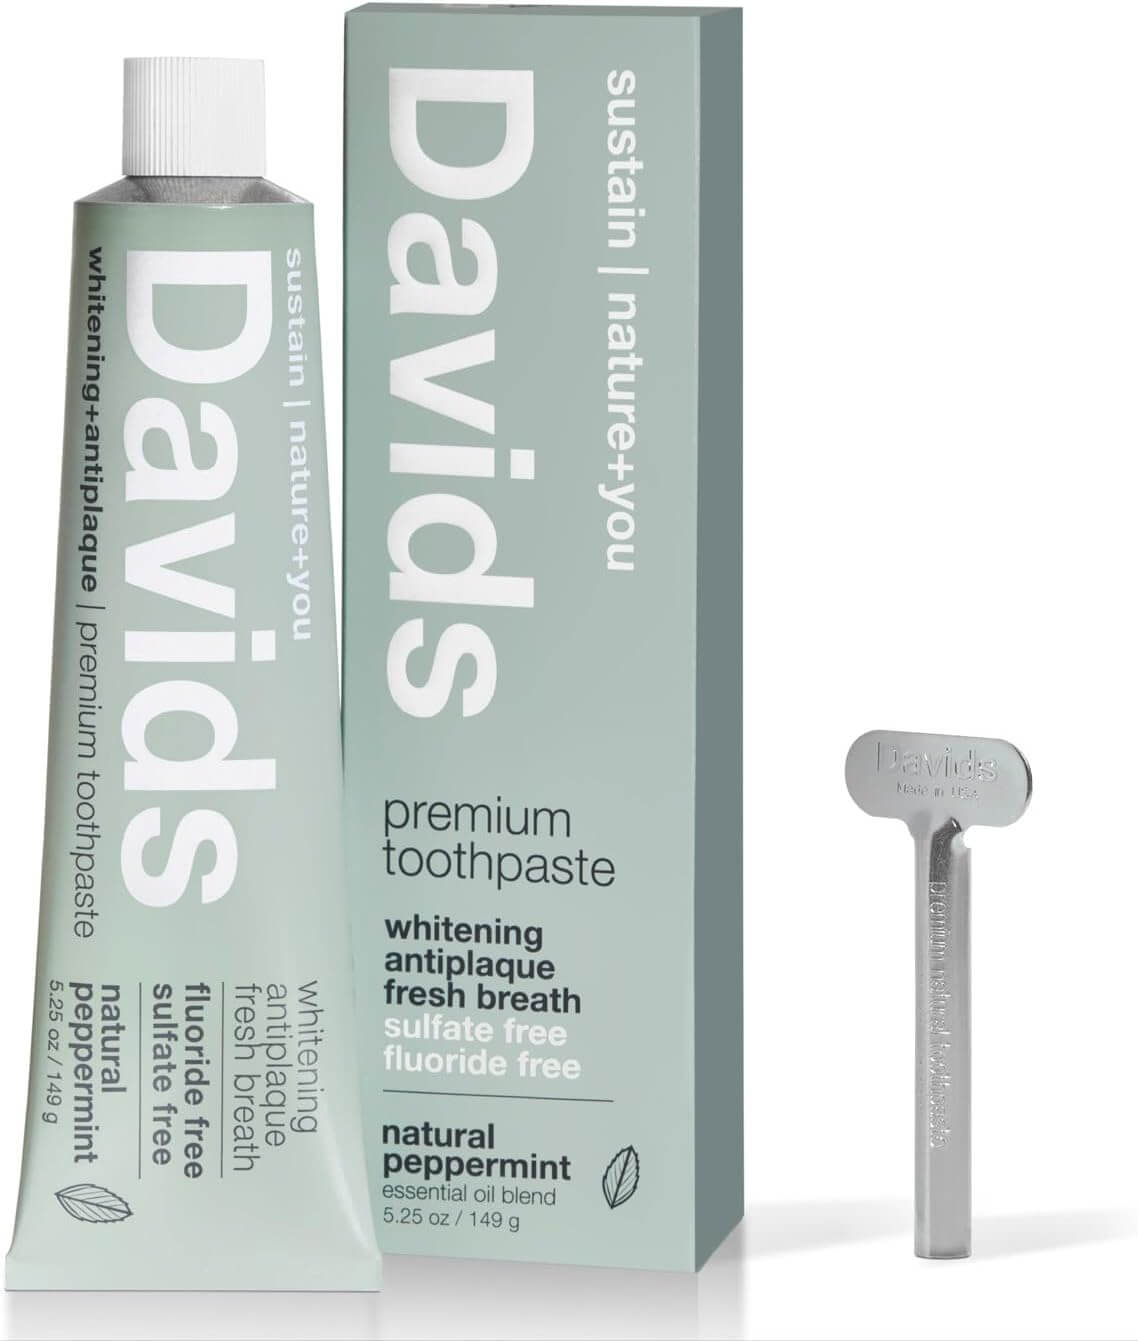 Davids Premium Natural Toothpaste